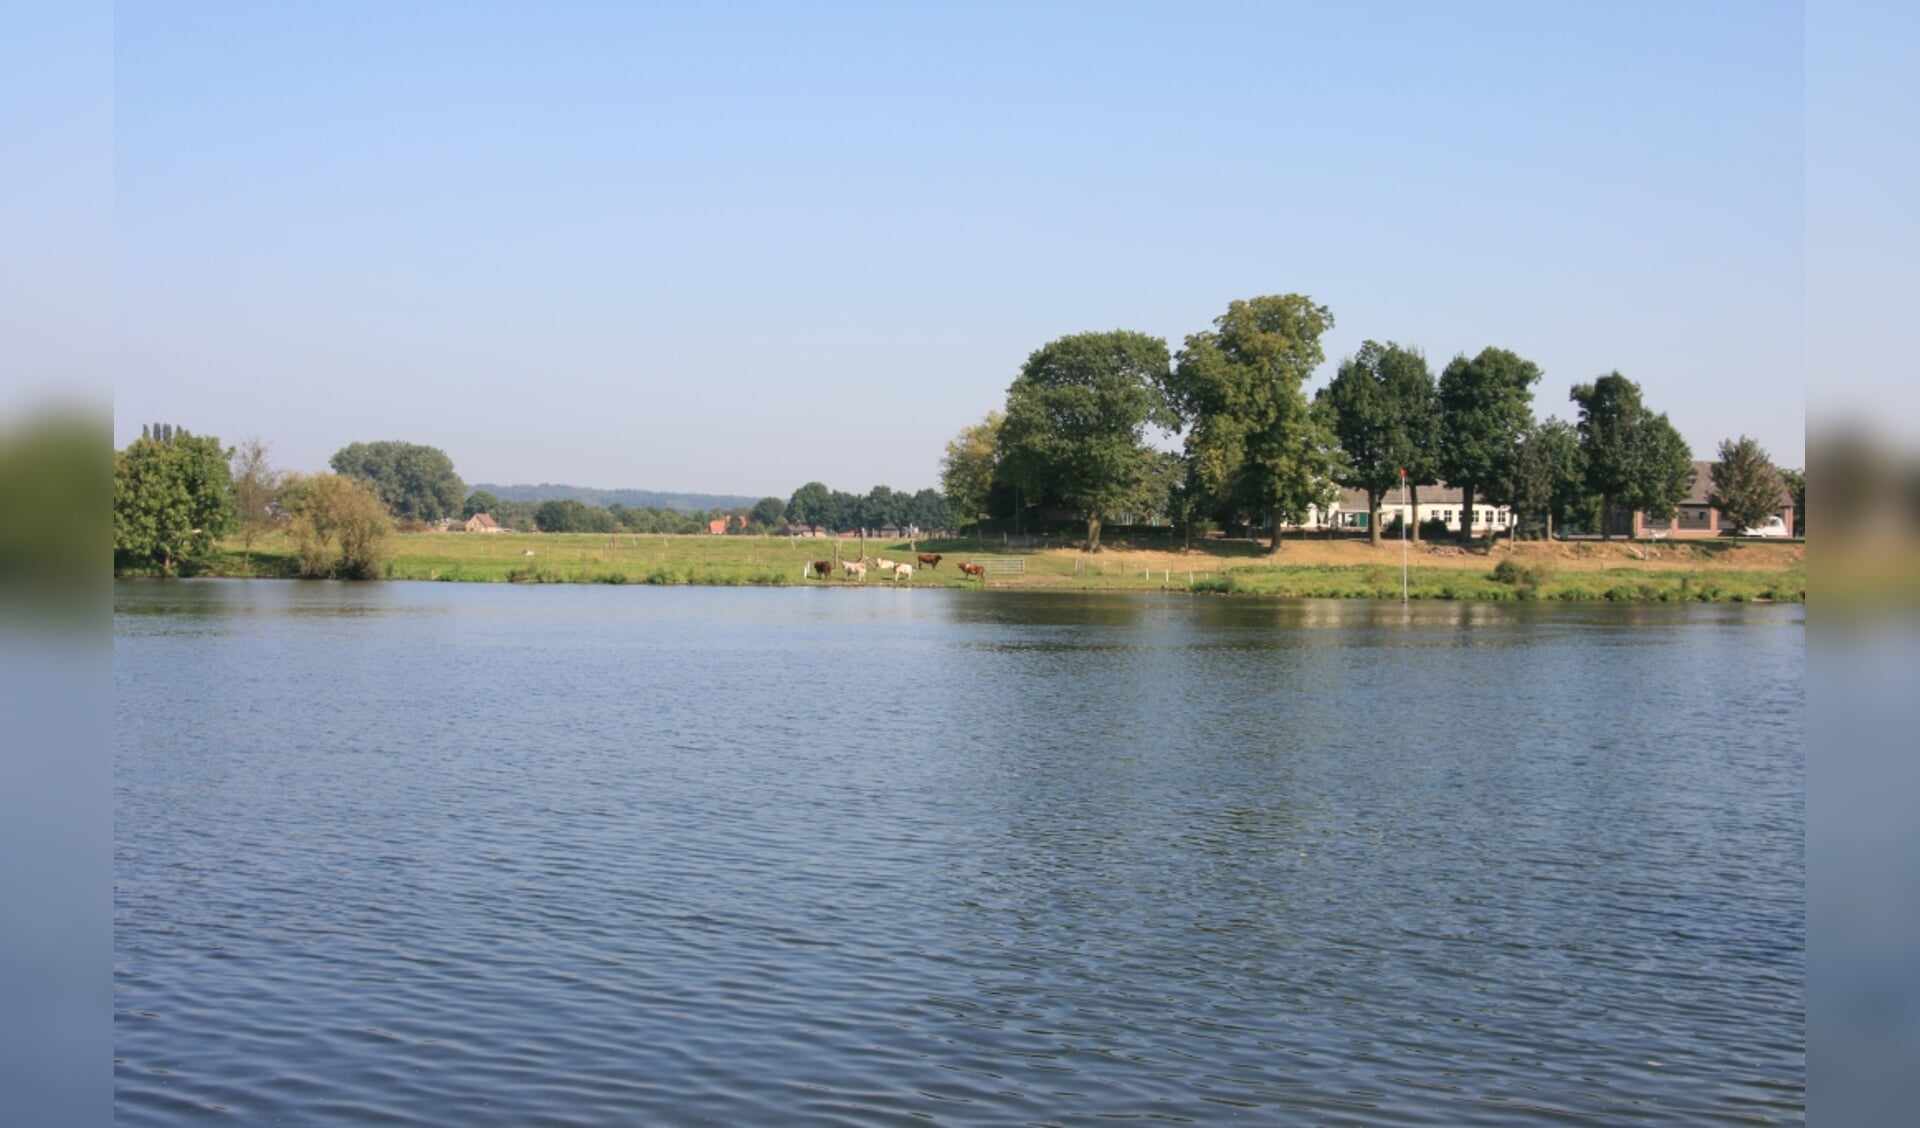 Het waterschap wil dat ook de dijken langs de Maas veilig blijven. 